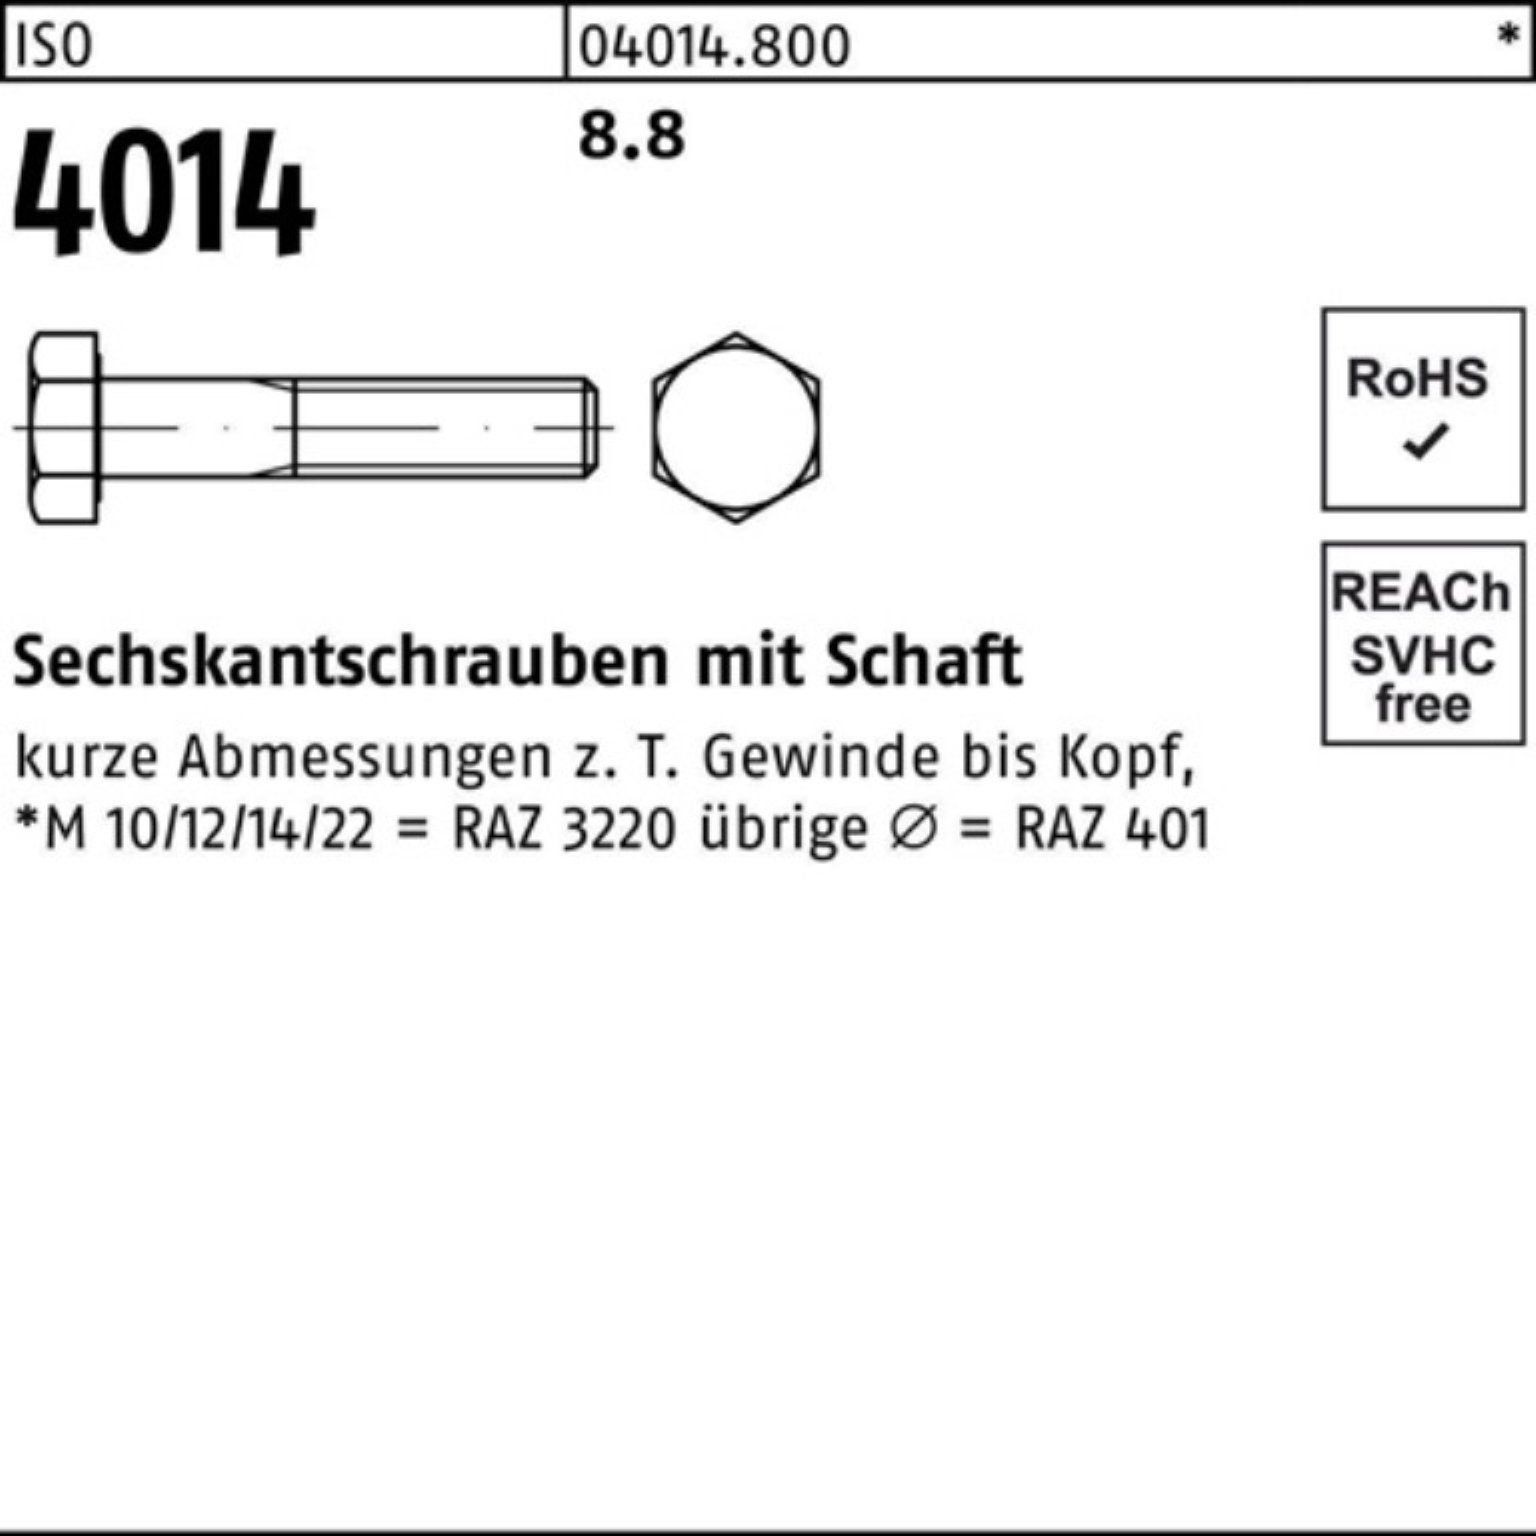 Bufab ISO 8.8 Sechskantschraube Stück M24x 1 4014 Sechskantschraube 100er Schaft 430 ISO Pack